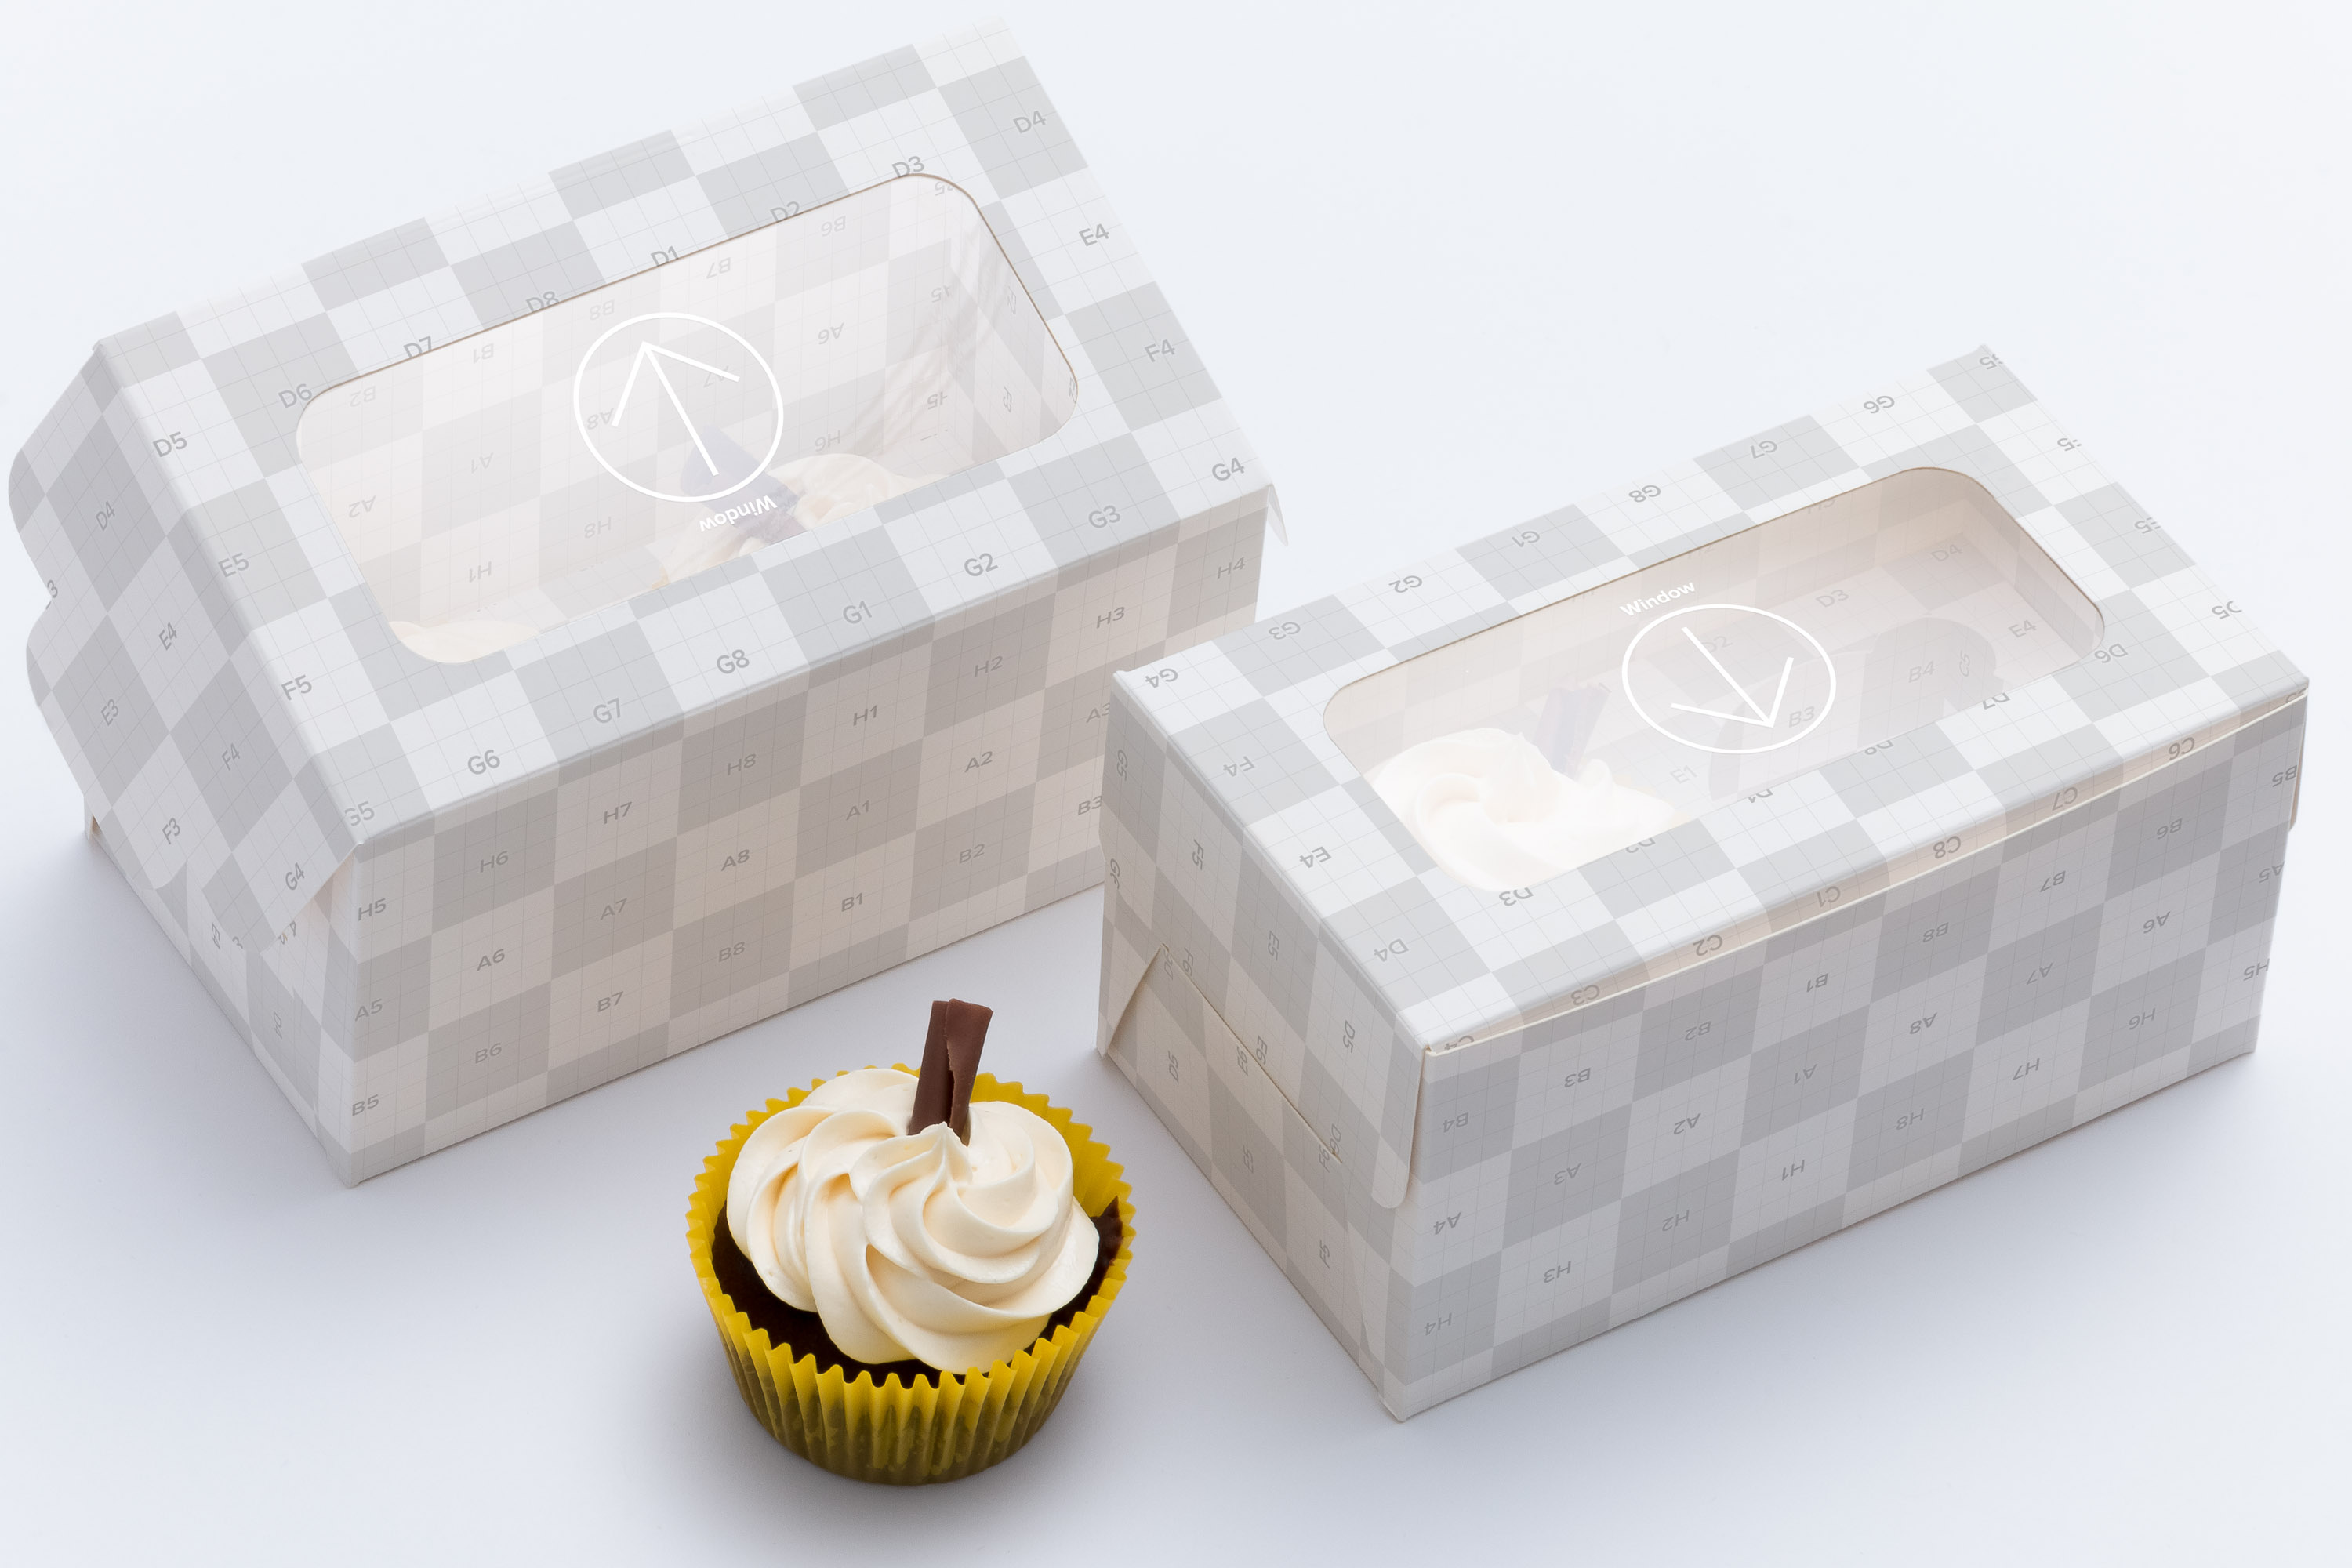 两只装纸杯蛋糕烘焙包装纸盒外观设计样机02 Two Cupcake Box Mockup 02插图(2)